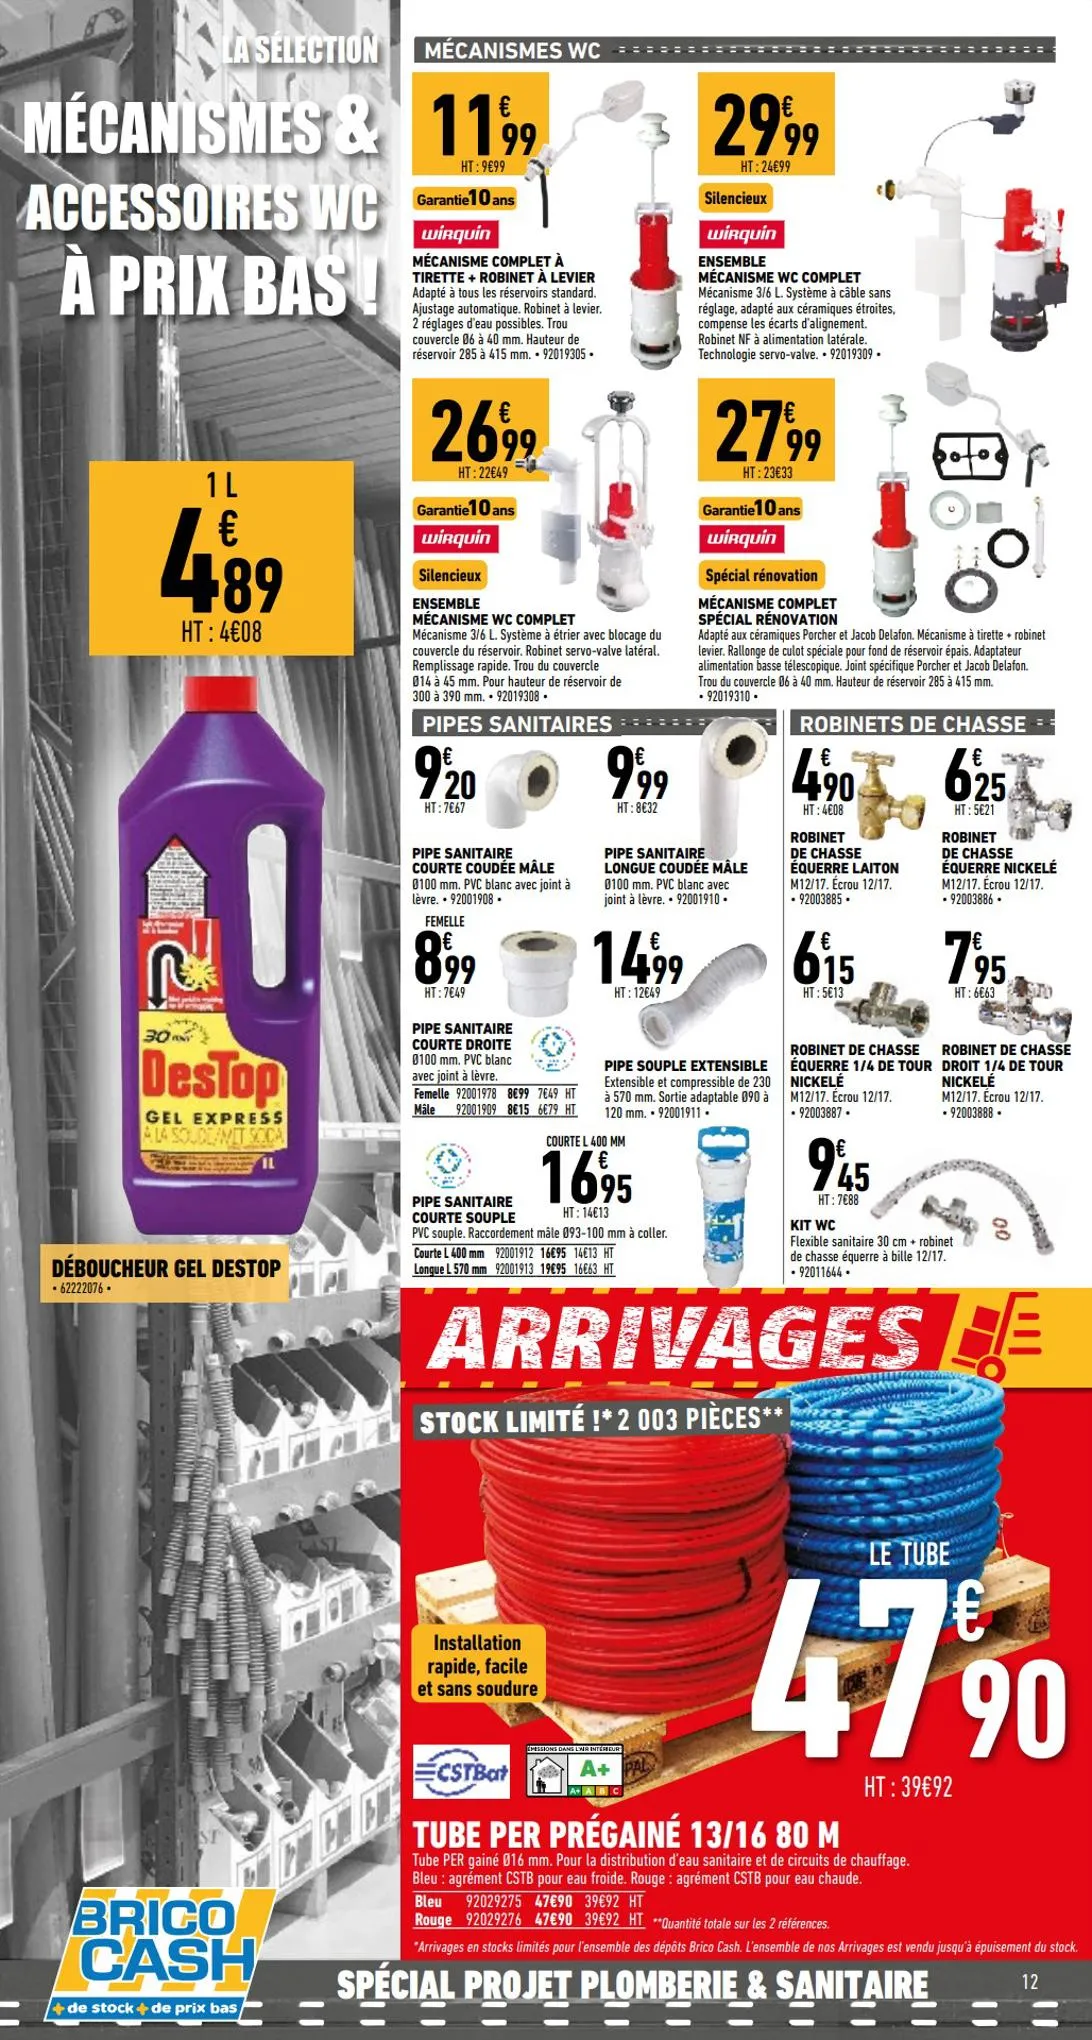 Catalogue Spécial projet plomberie et sanitaire, page 00012